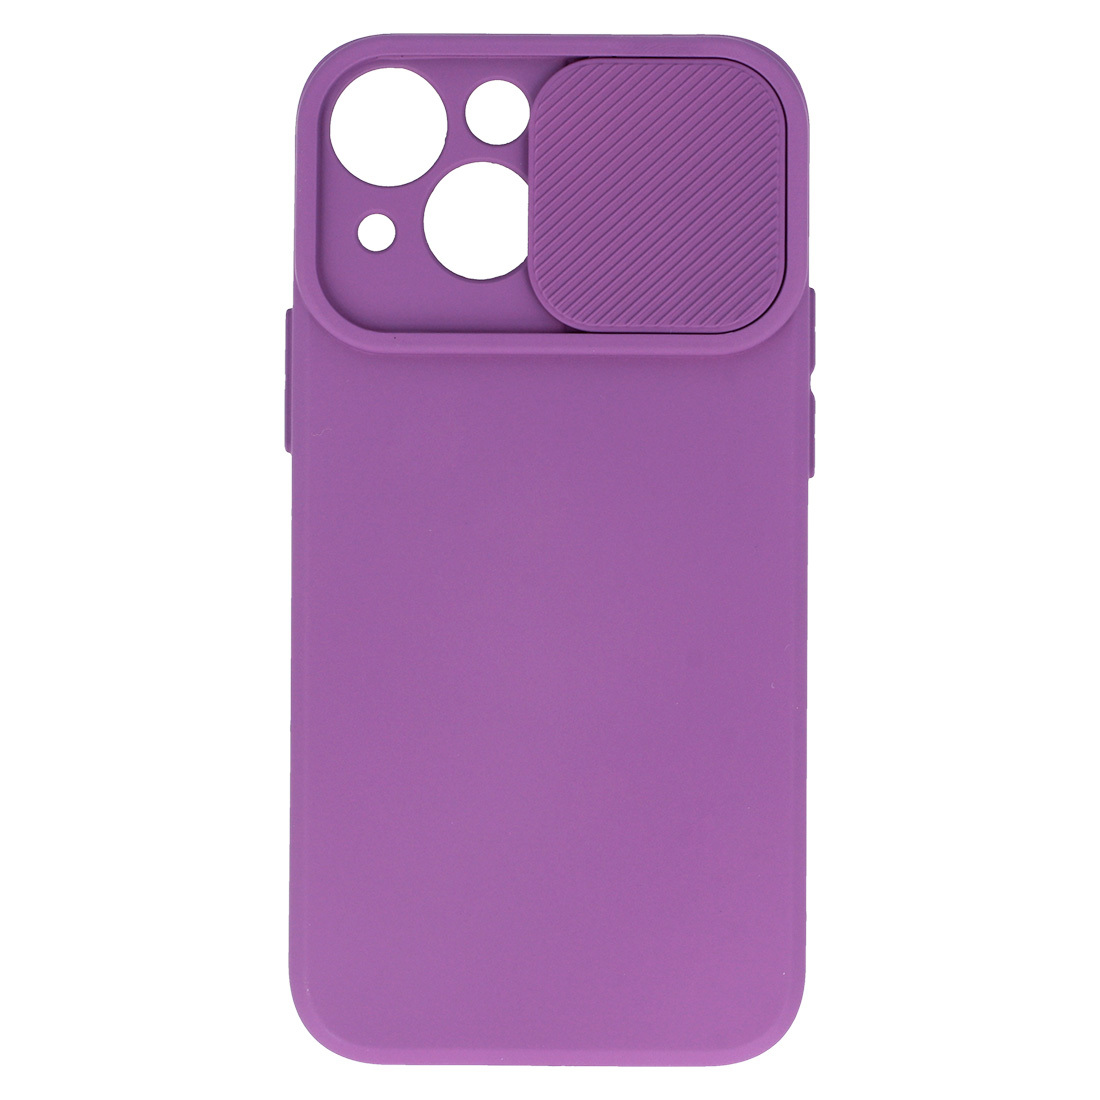 Pokrowiec etui z elastycznego TPU Camshield Soft Case fioletowe APPLE iPhone 11 Pro / 4